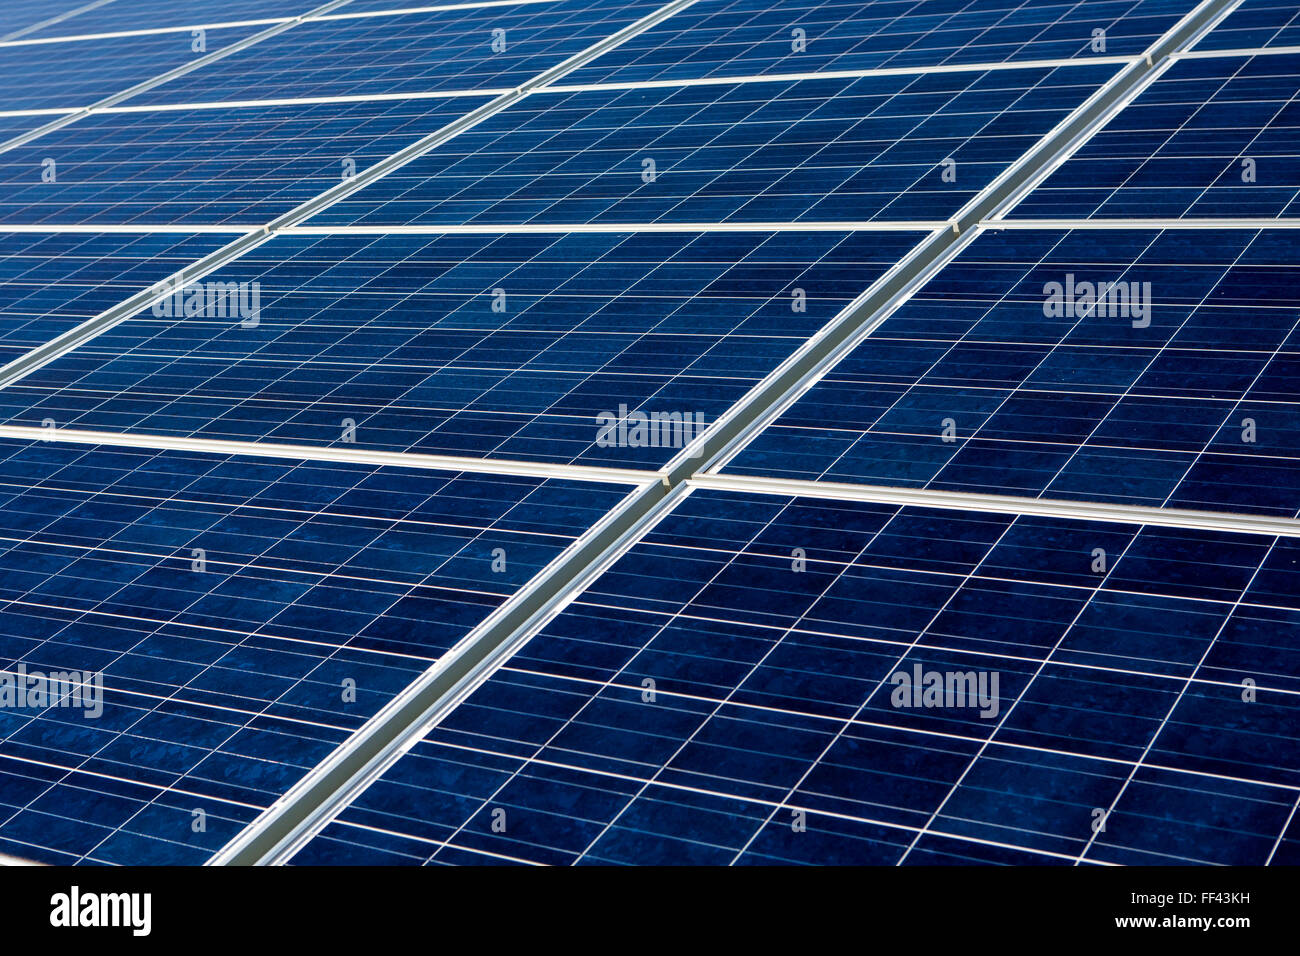 Les panneaux solaires photovoltaïques au solar array de carbone faible Gordano, une communauté projet d'énergie renouvelable. La prestation de 1.750 HWh par an. Avon, Somerset. Banque D'Images